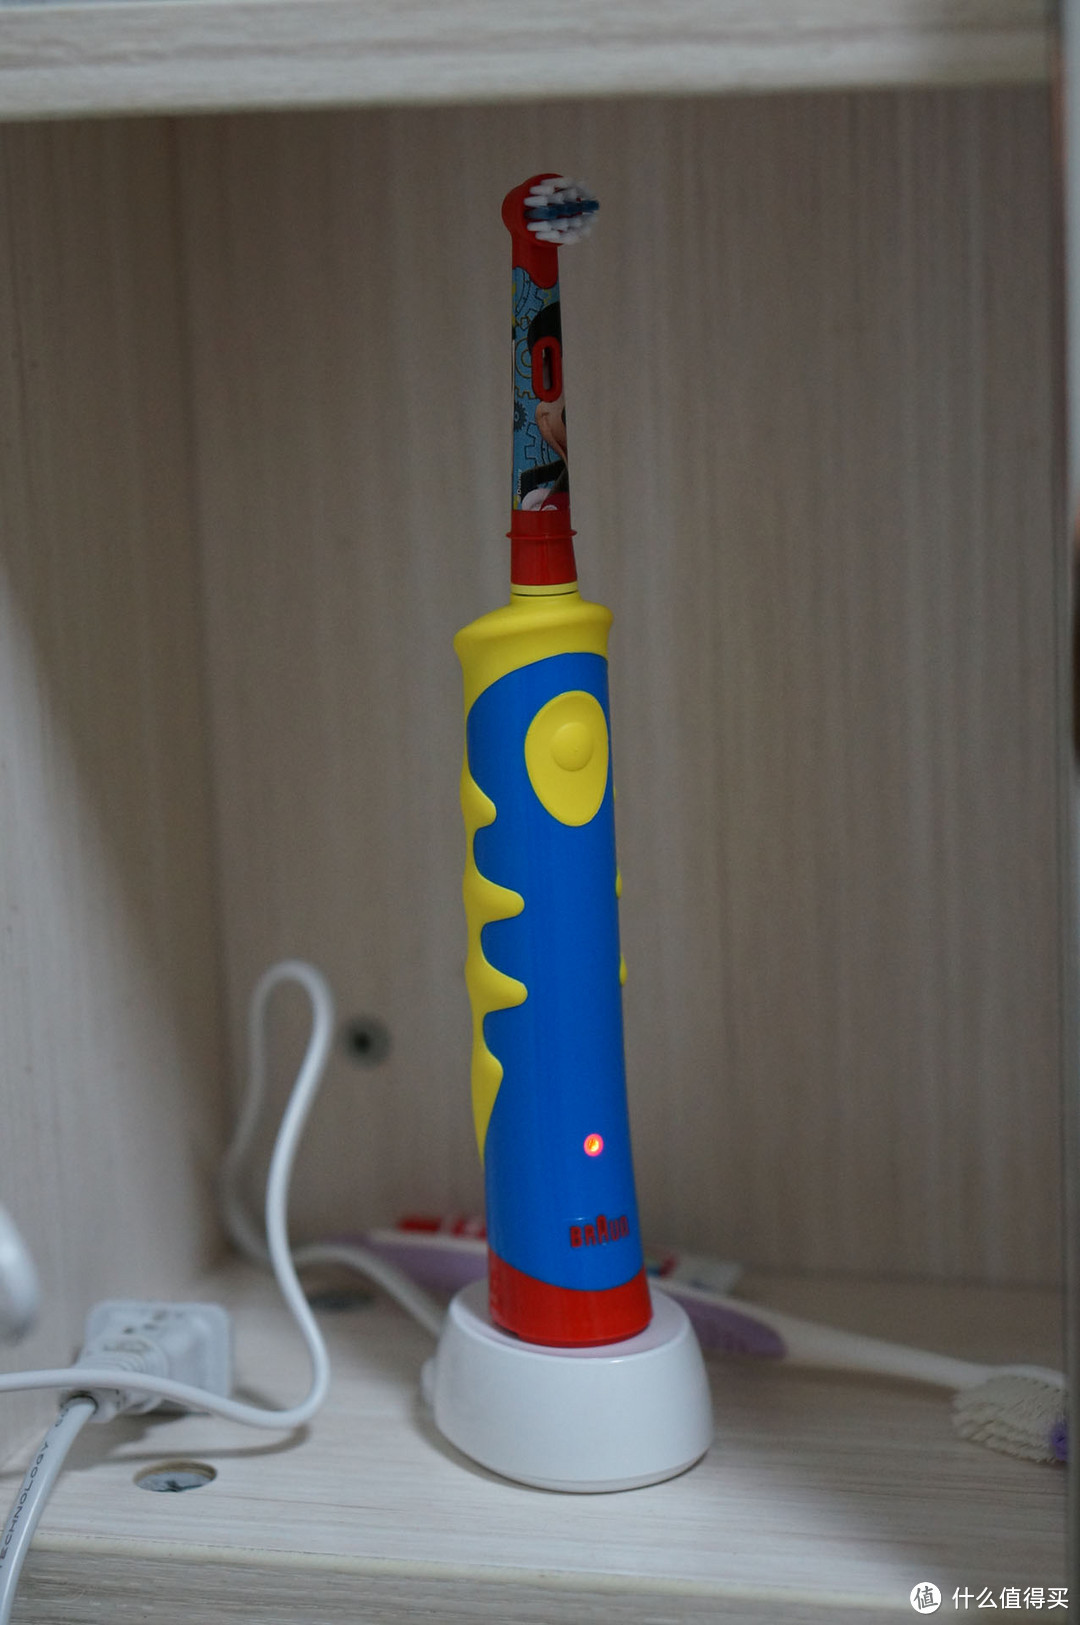 全家刷牙电动化——OralB 欧乐B D10儿童阶段性充电式电动牙刷 使用评价